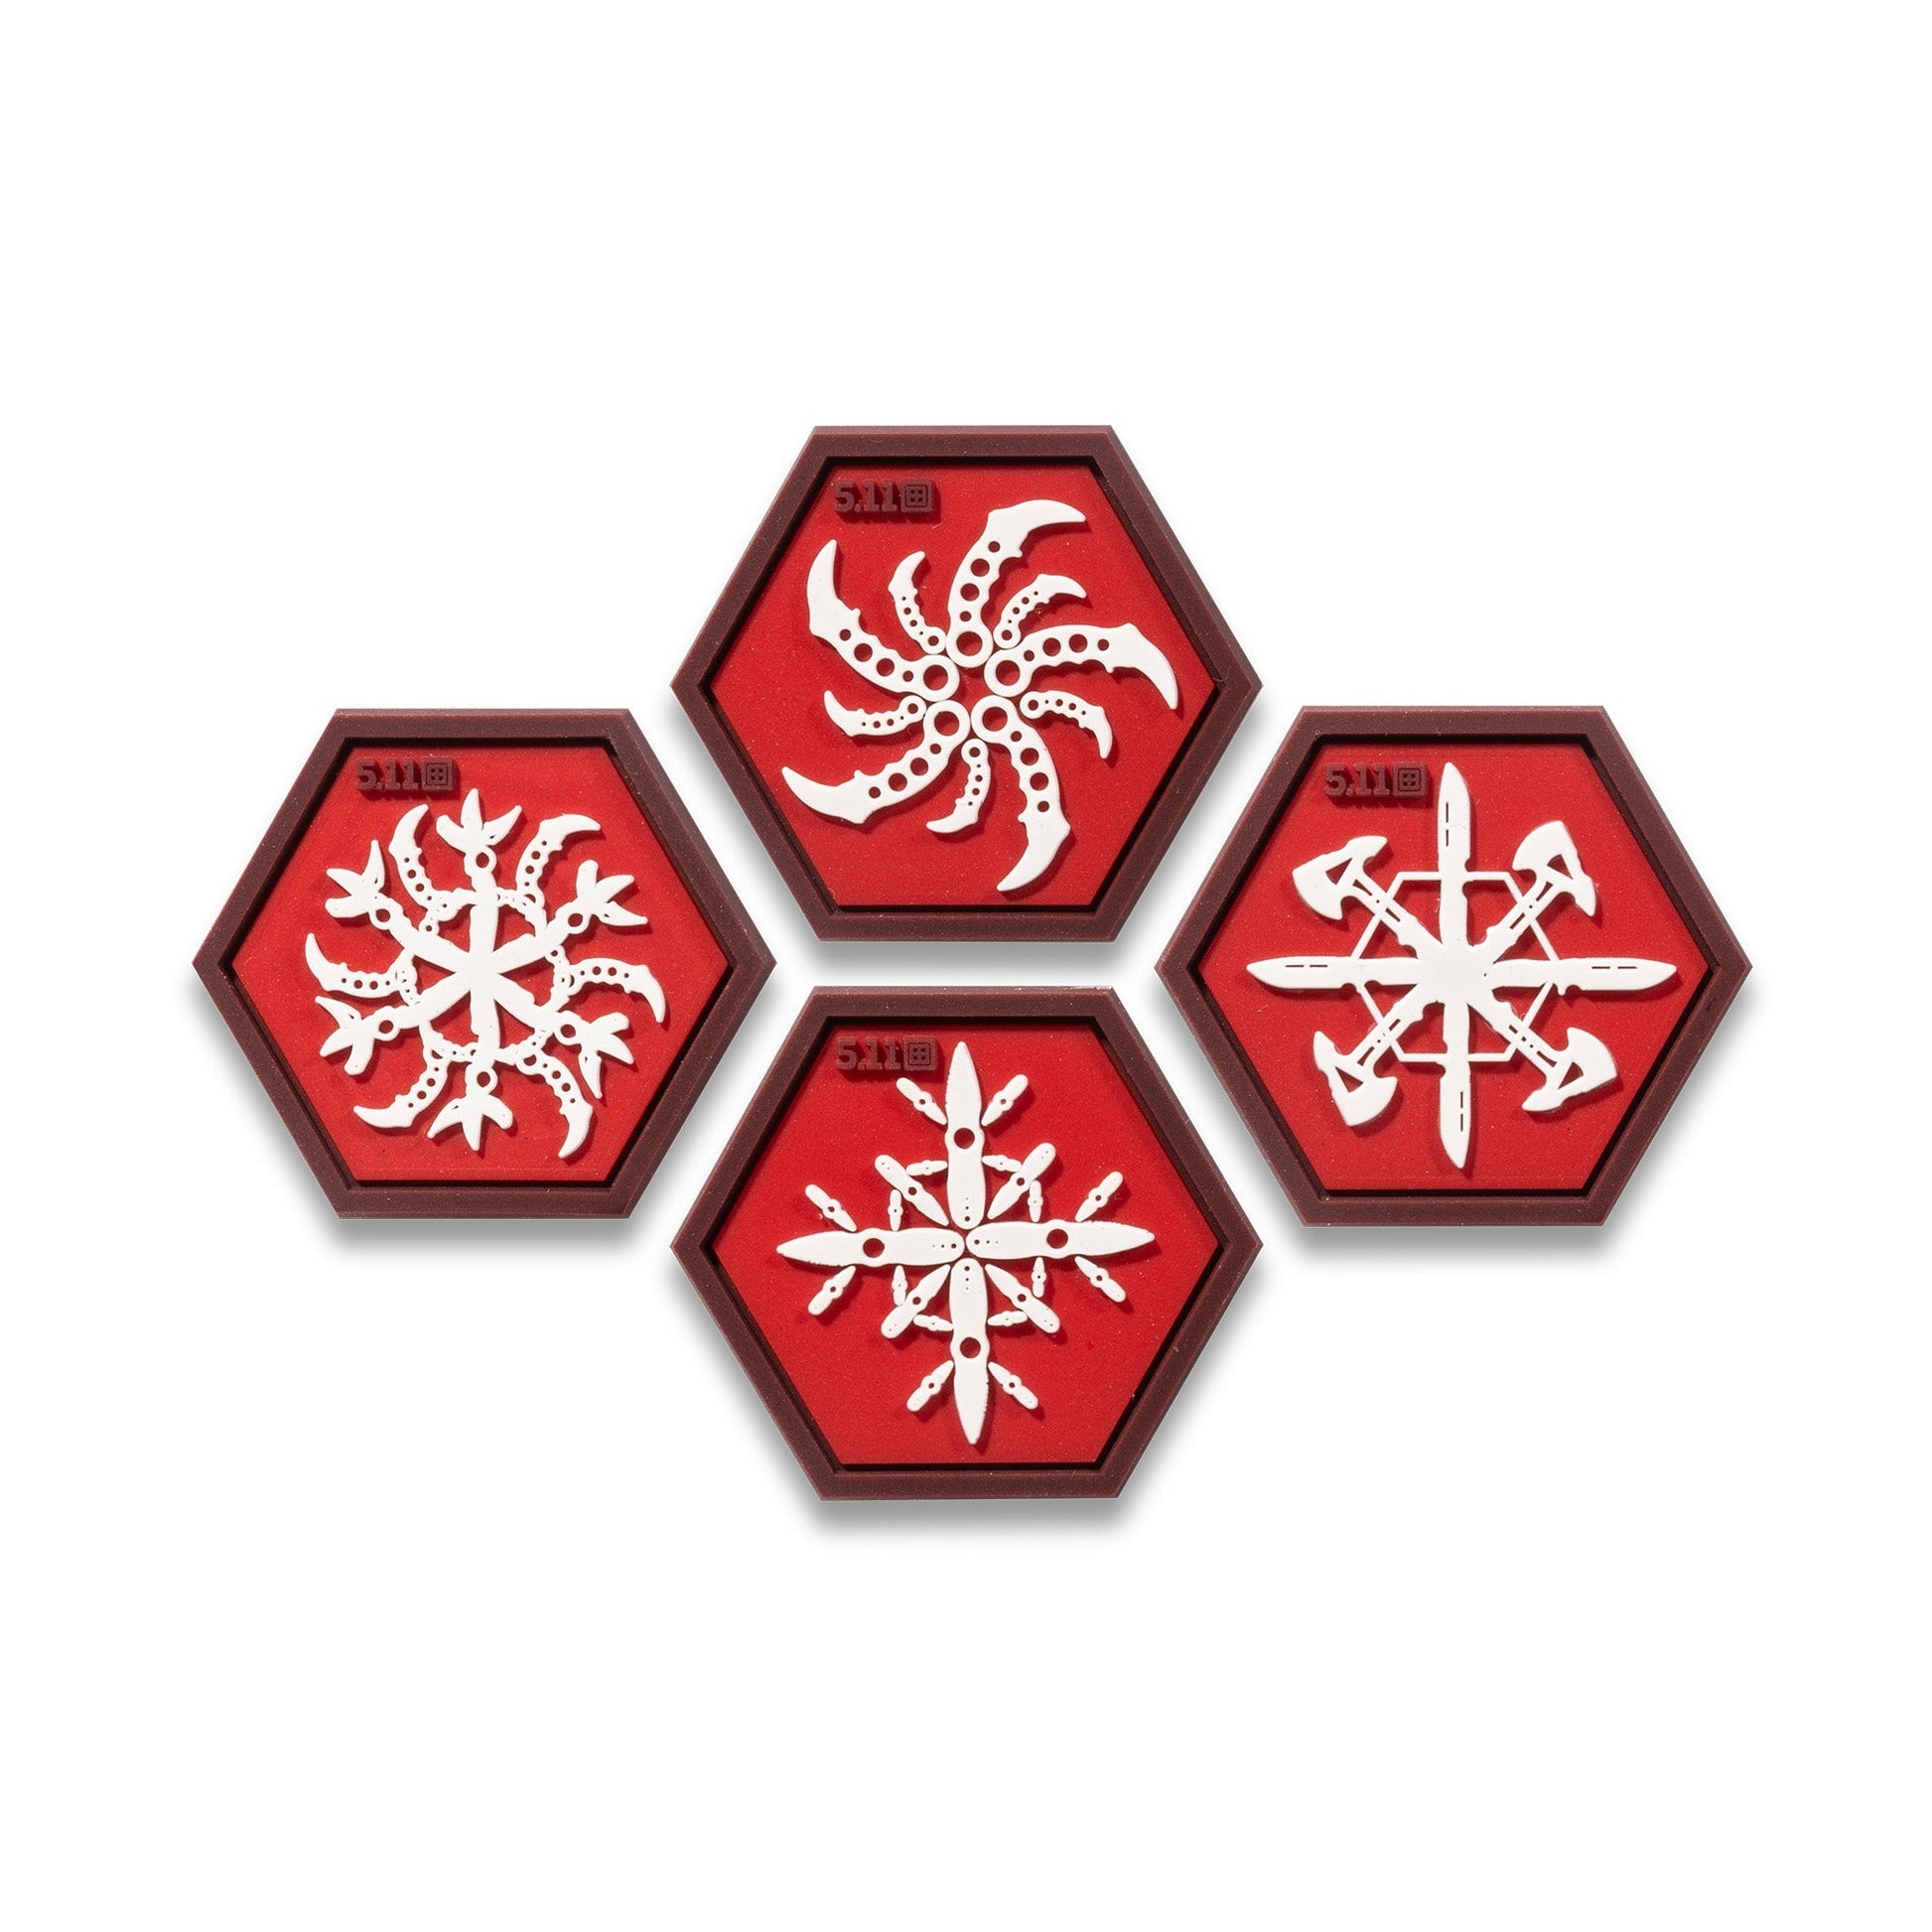 5.11 Tactical Snowflake Ninja Star Patch Tactical Distributors Ltd New Zealand